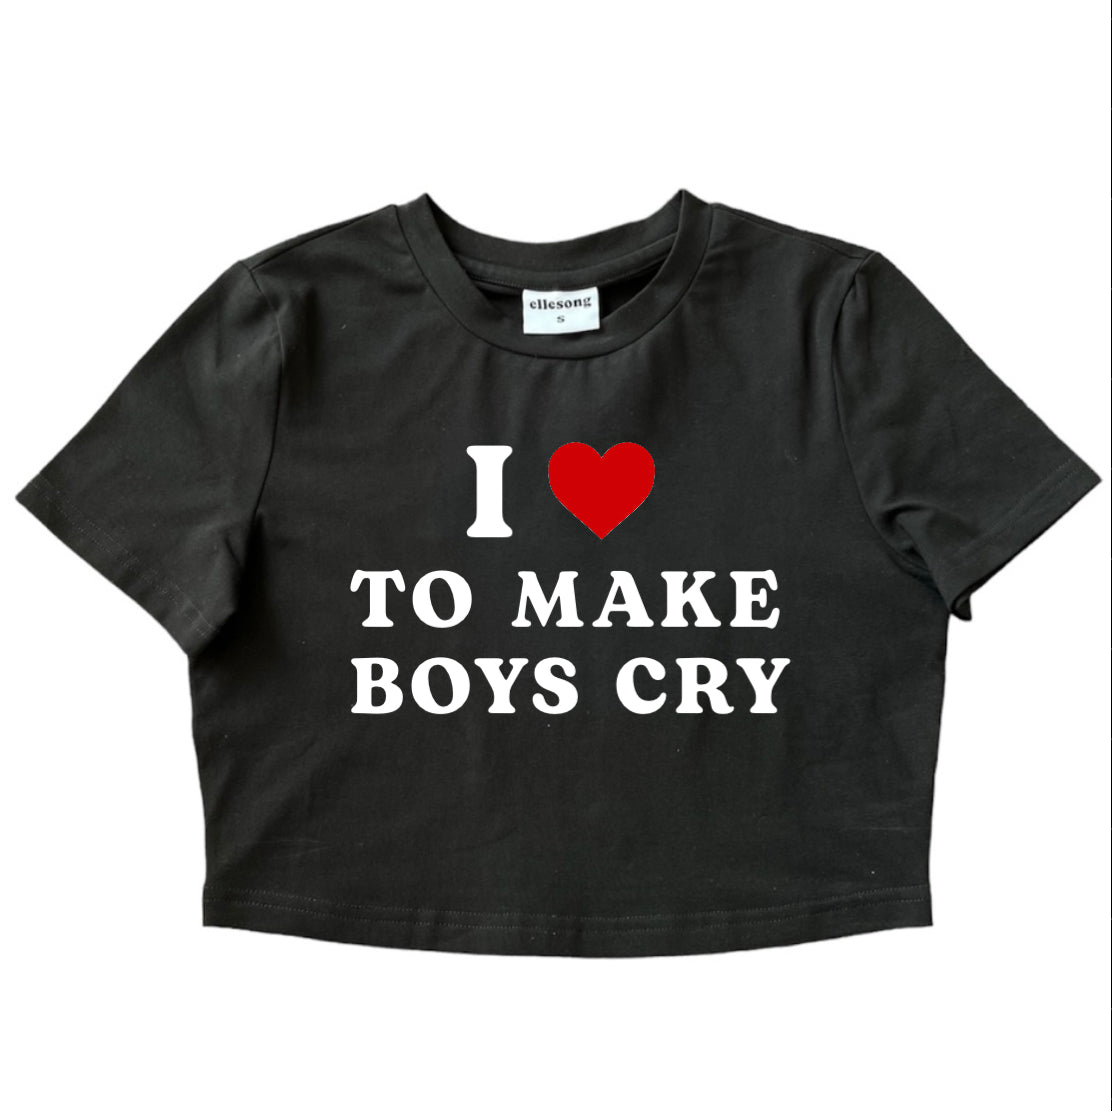 I Heart To Make Boys Cry Baby Tee